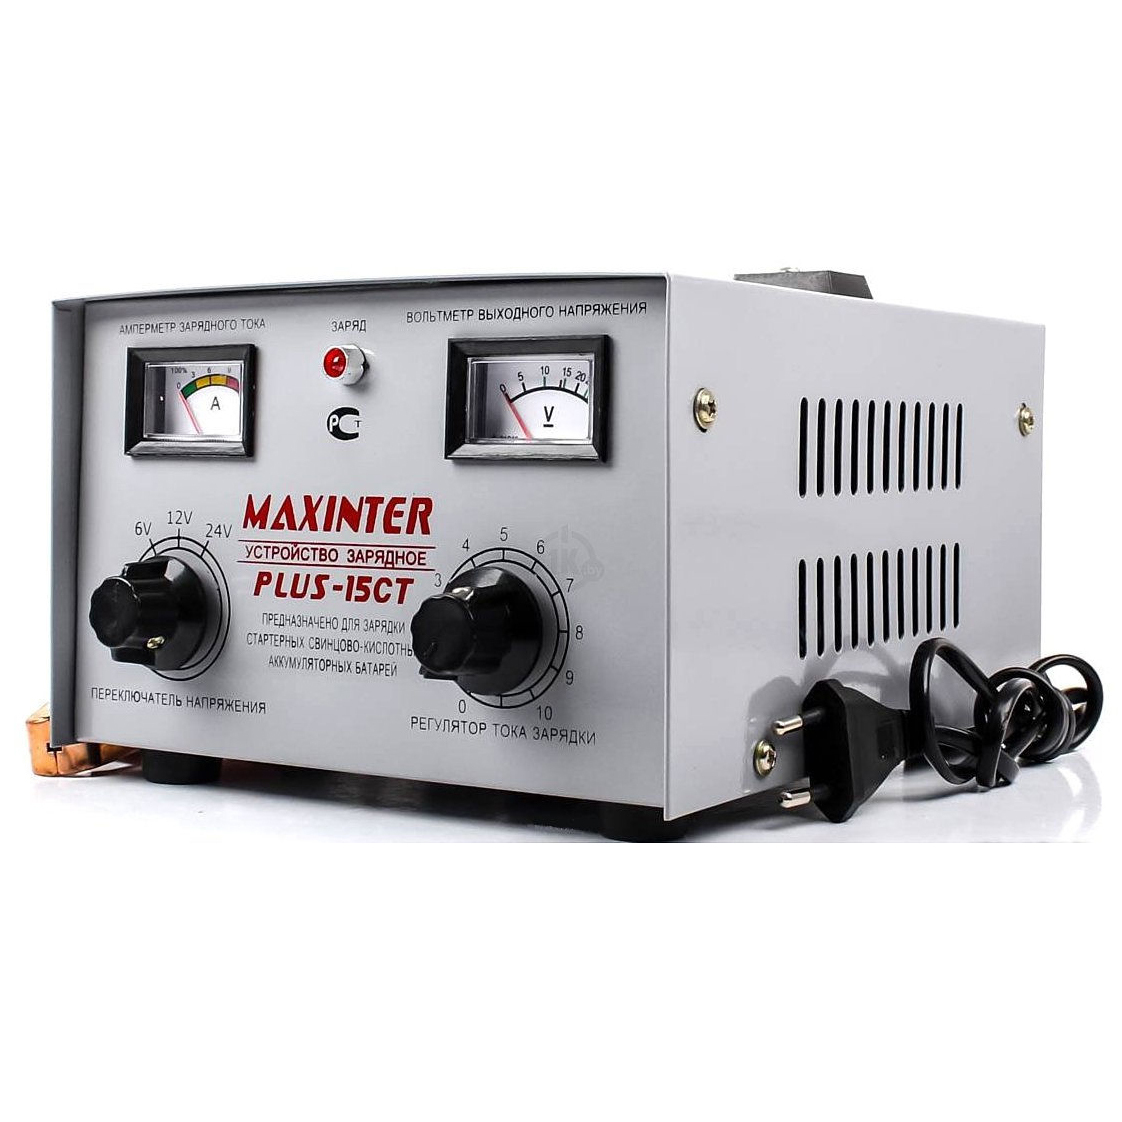 Максинтер зарядное. Maxinter Plus-15ct. Maxinter Plus-15a. Зарядное устройство Maxinter Plus-15a. Зарядное устройство Maxinter Plus 15 at.